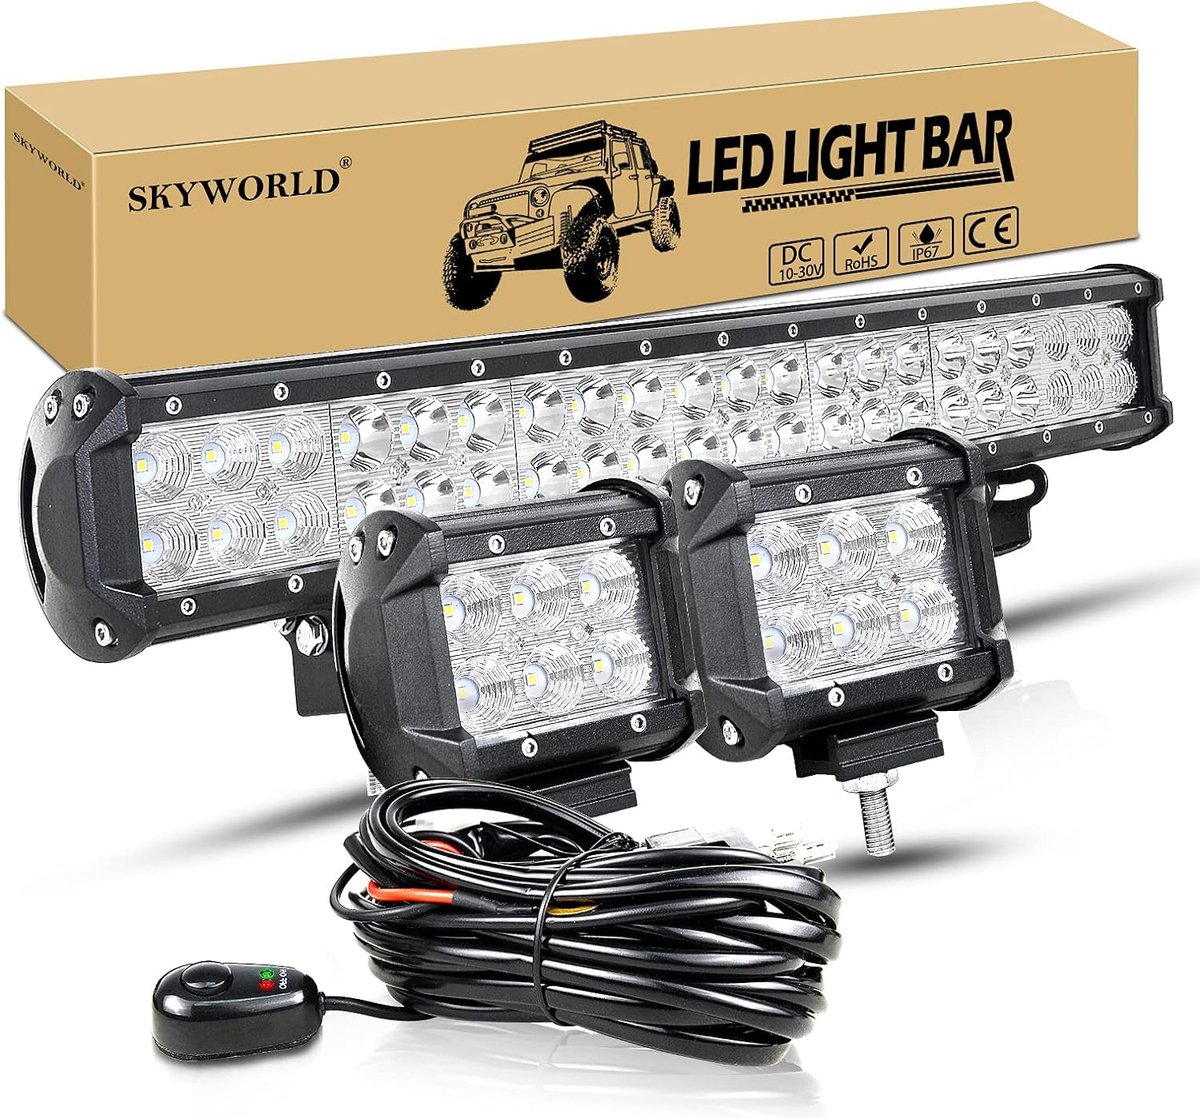 Lichtbalk met Bedrading voor Vrachtwagens - Krachtige LED Verlichting - Waterdicht - Eenvoudige Installatie - Verbeterde Veiligheid en Zichtbaarheid